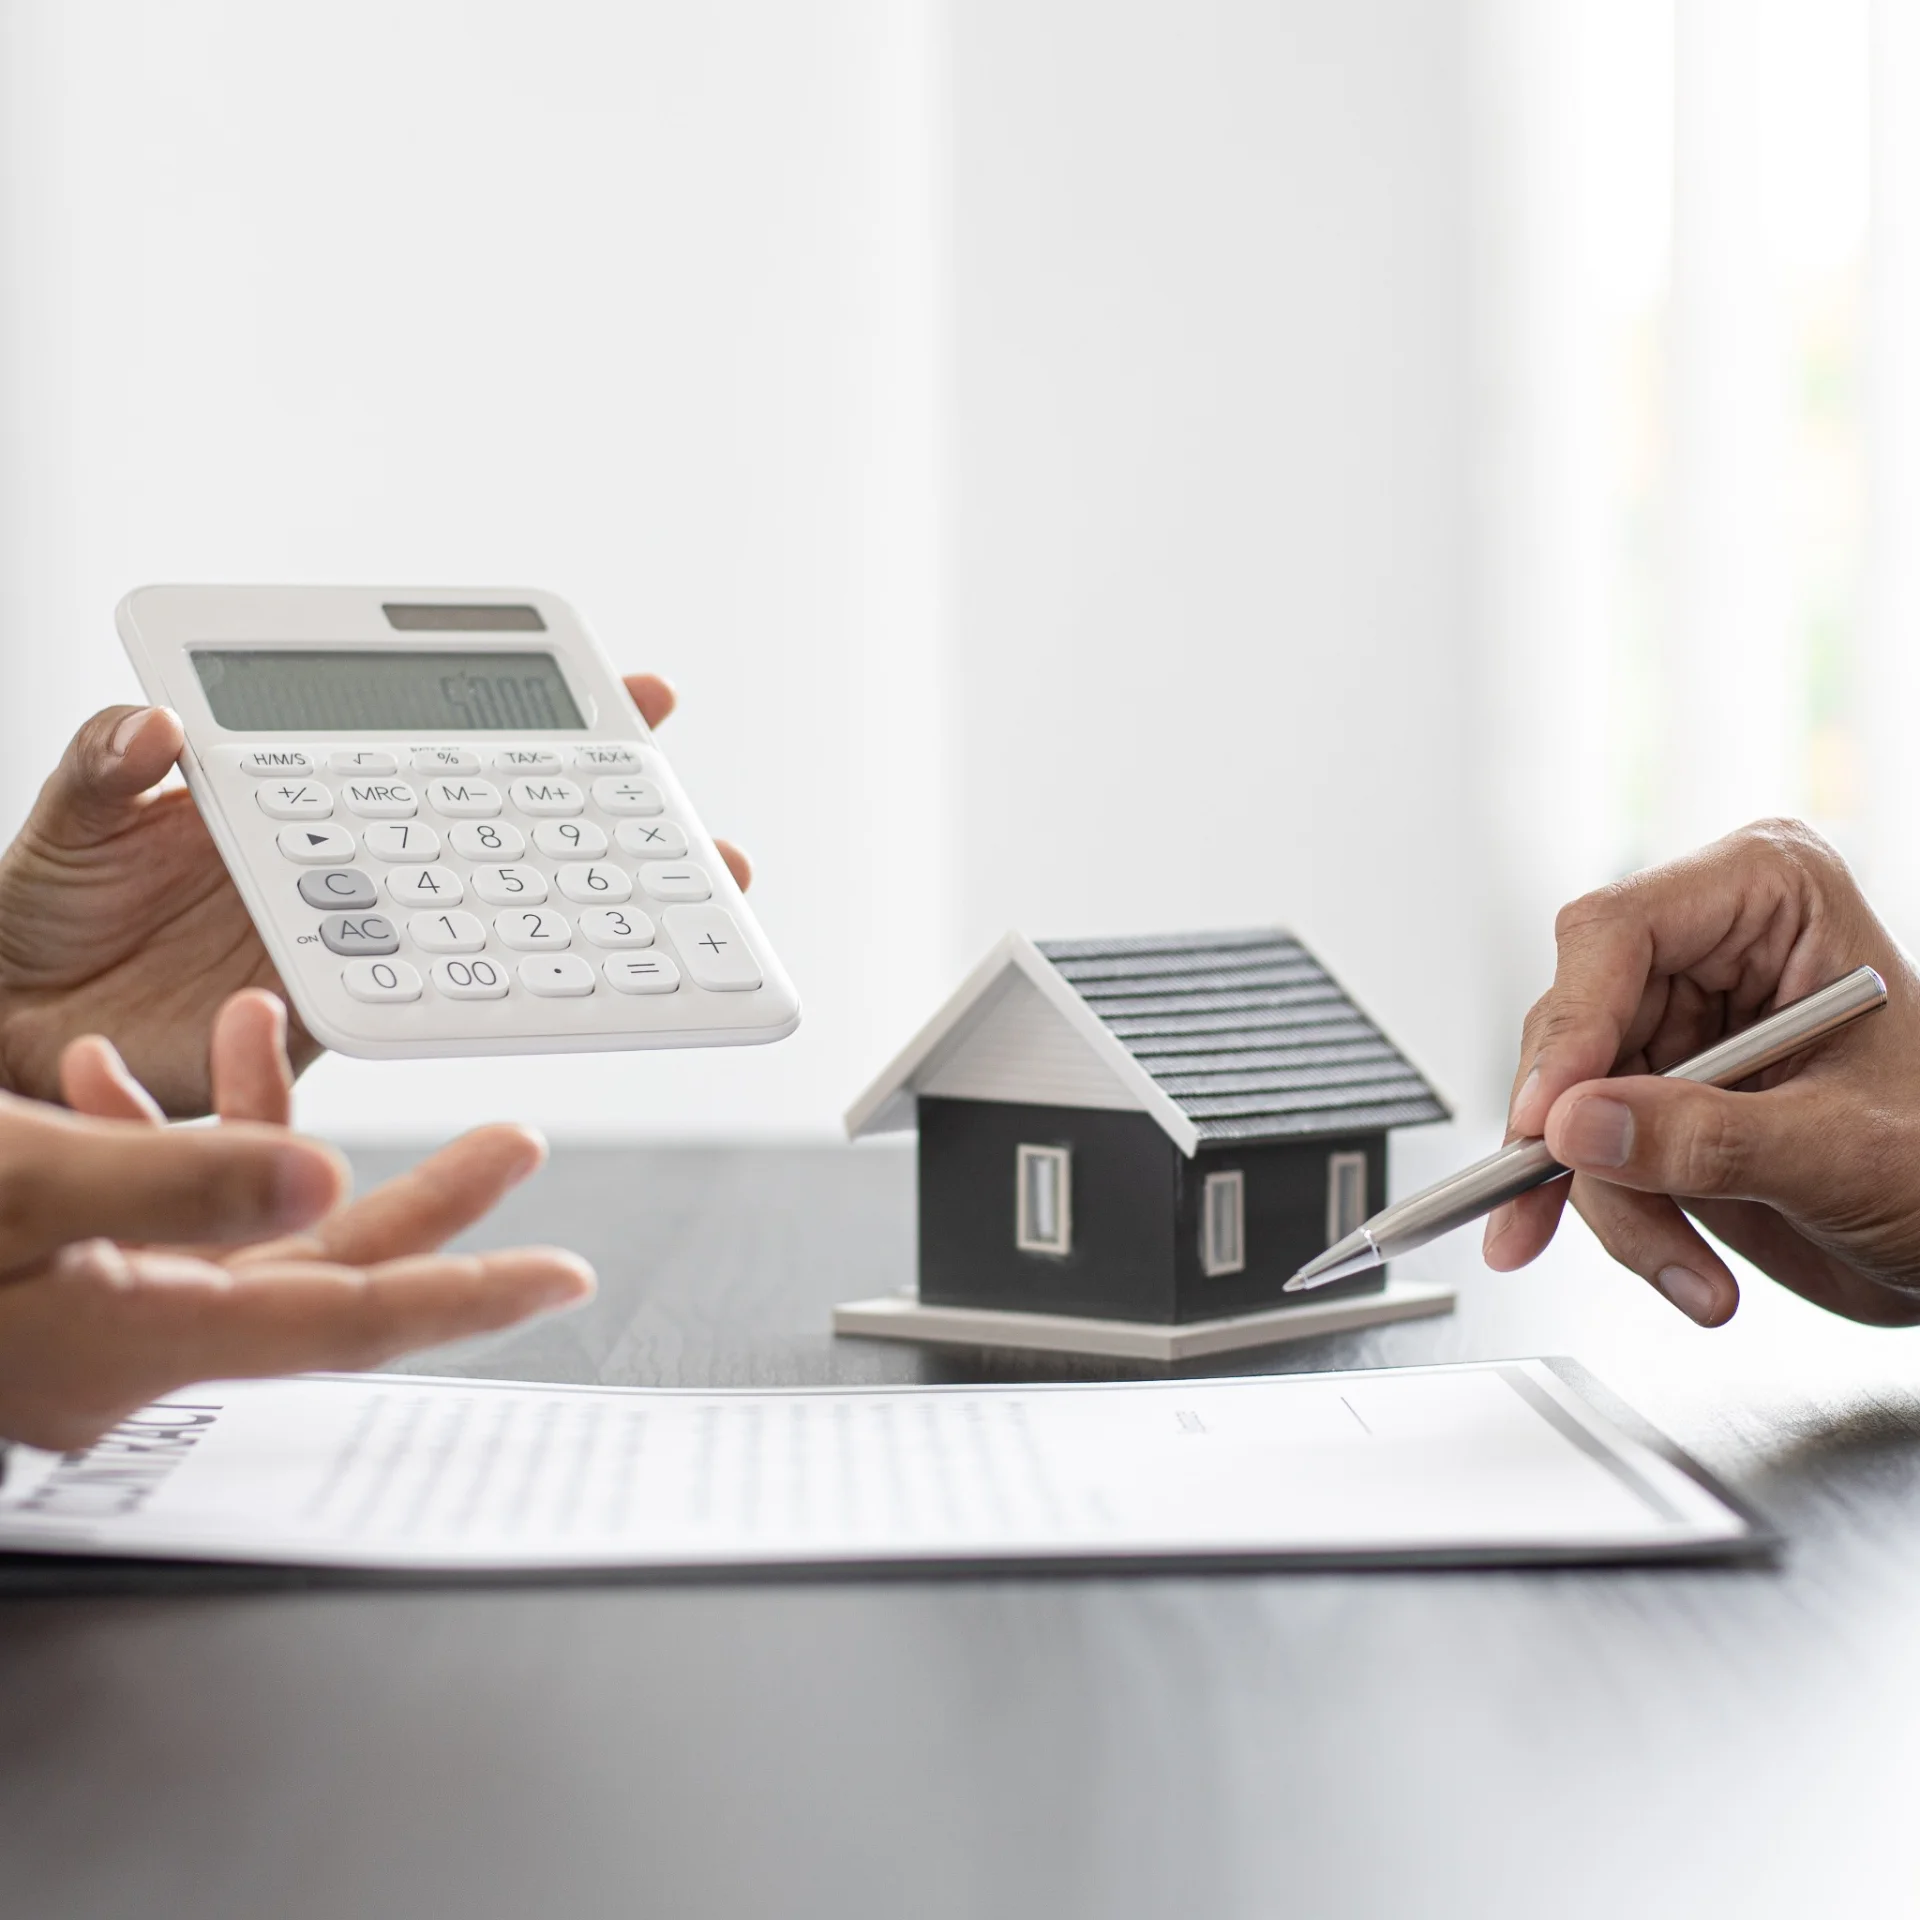 Sprzedaż mieszkania i zakup nowego – aspekty prawne i finansowe transakcji wiązanej